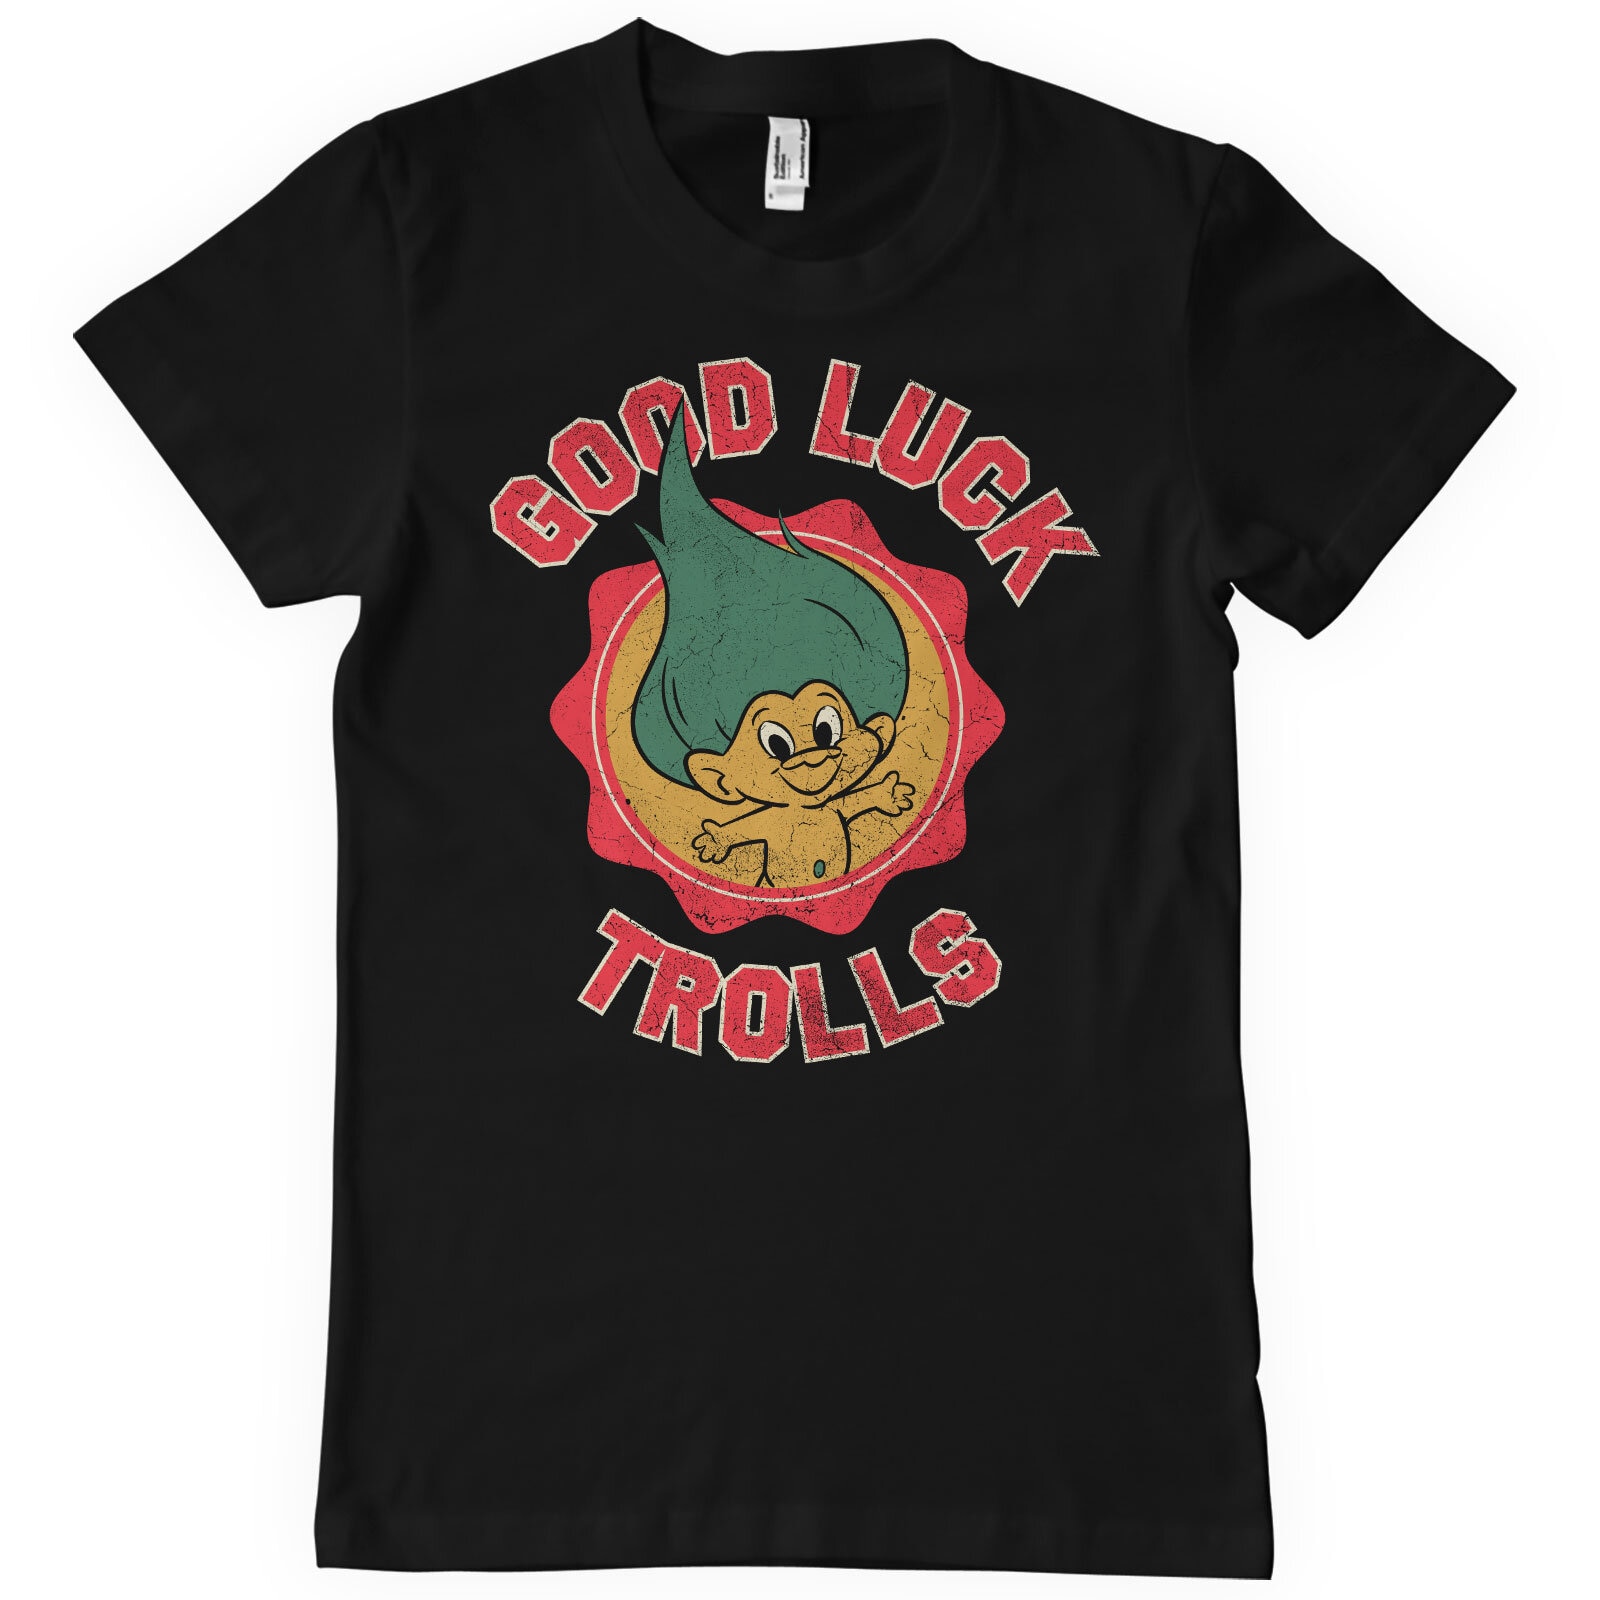 Good Luck Trolls T-Shirt